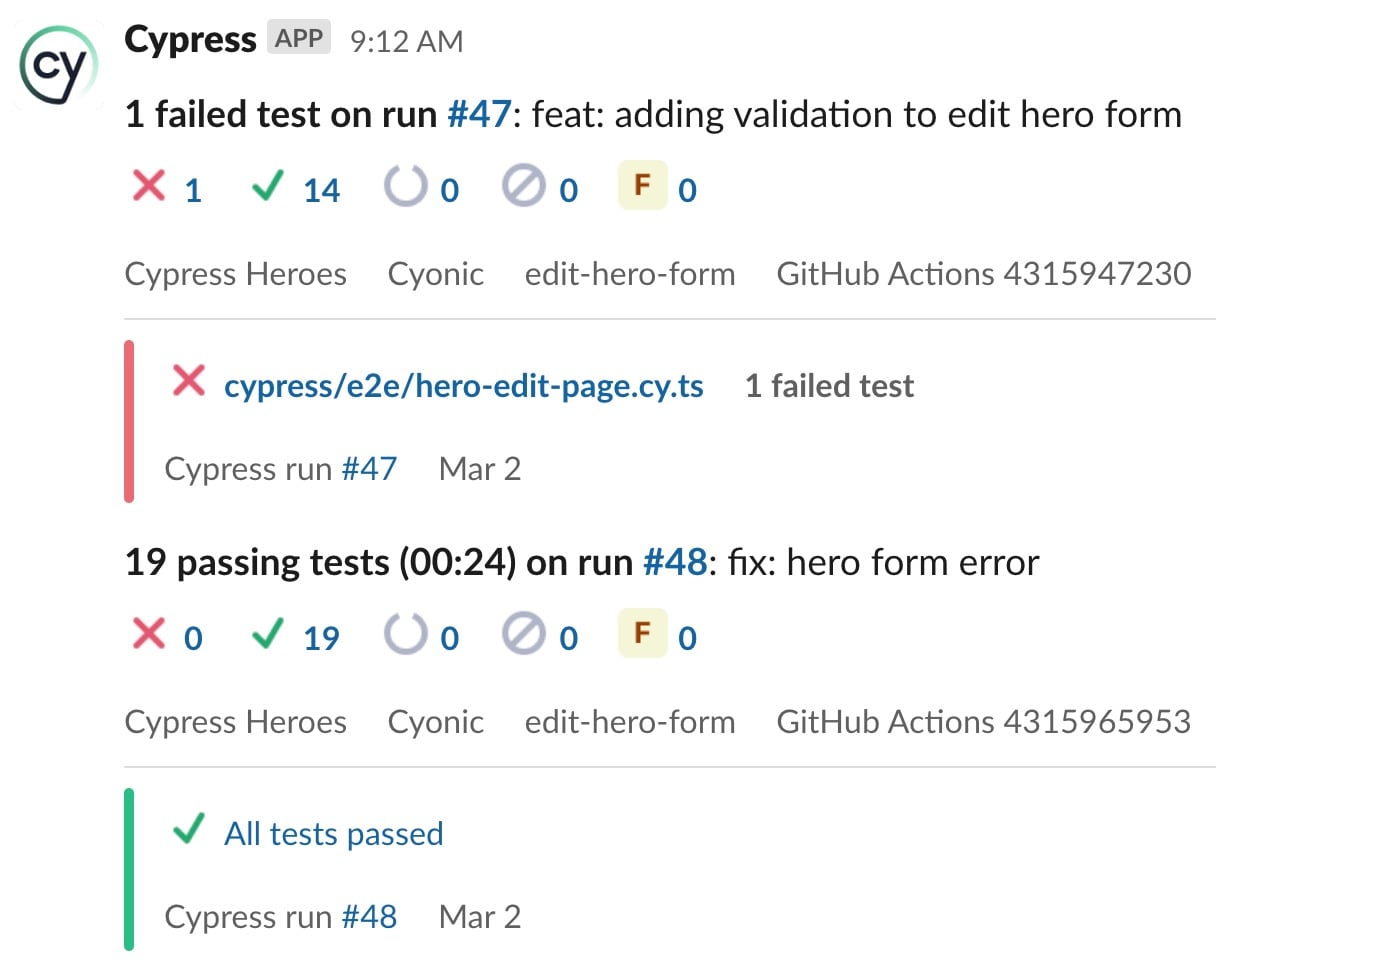 Cypress notification feed in Slack channel